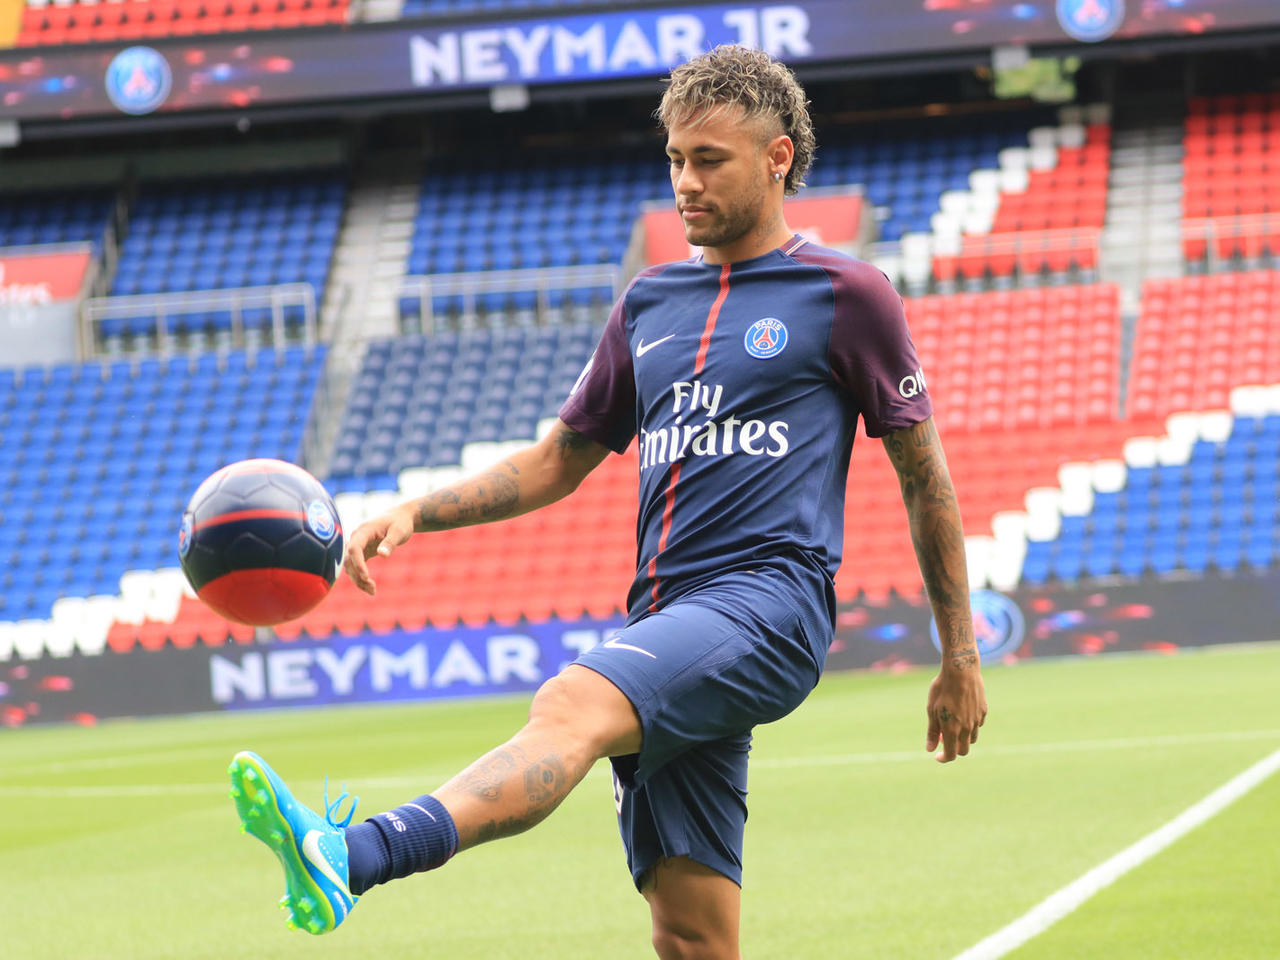 Khám phá kỹ thuật đi bóng nổi tiếng của Neymar